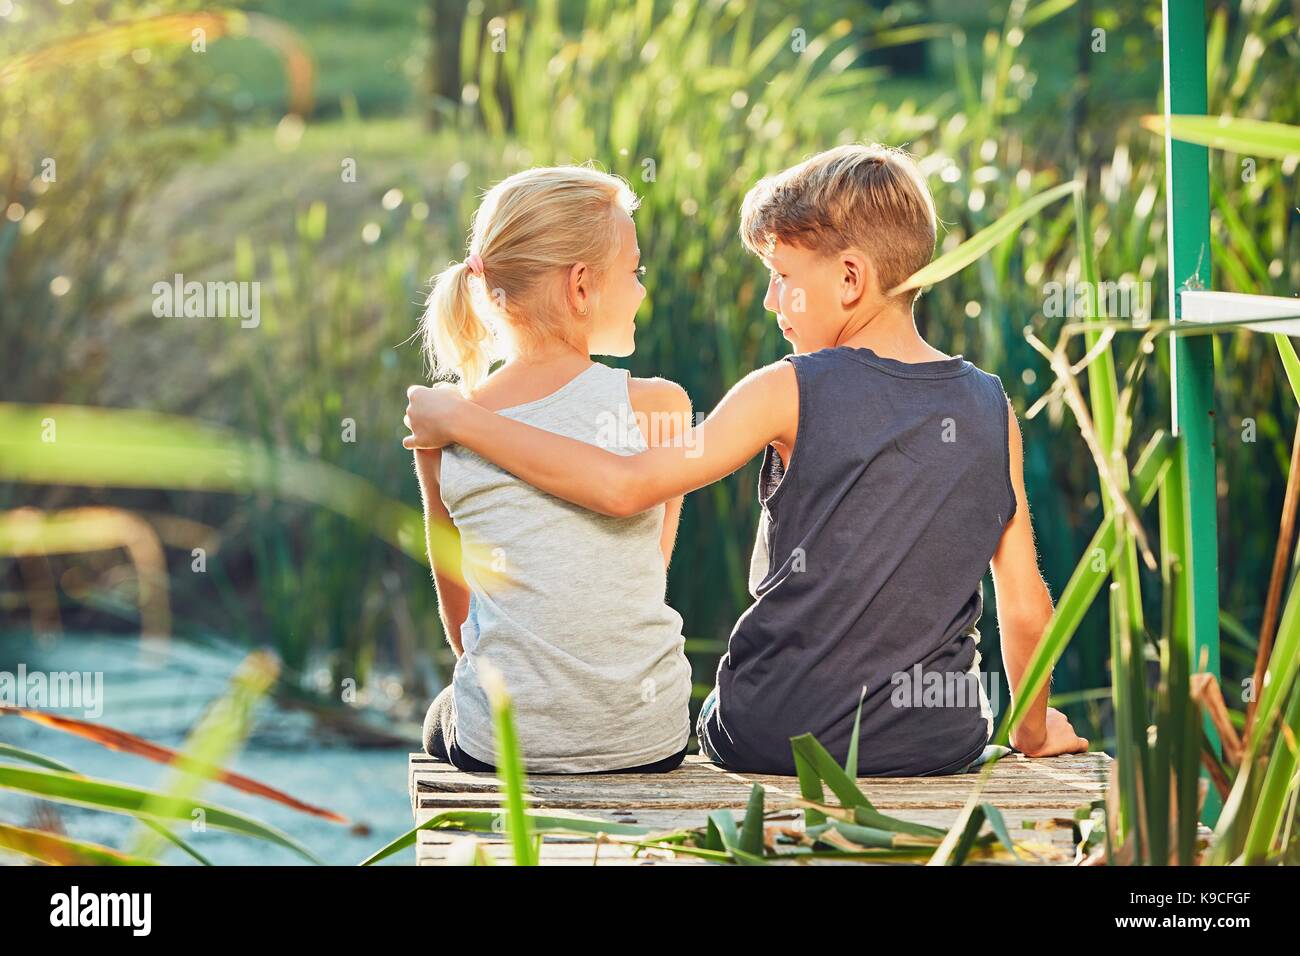 Estate in campagna. due bambini (di pari livello o migliori amici) seduto sul molo del lago. Foto Stock